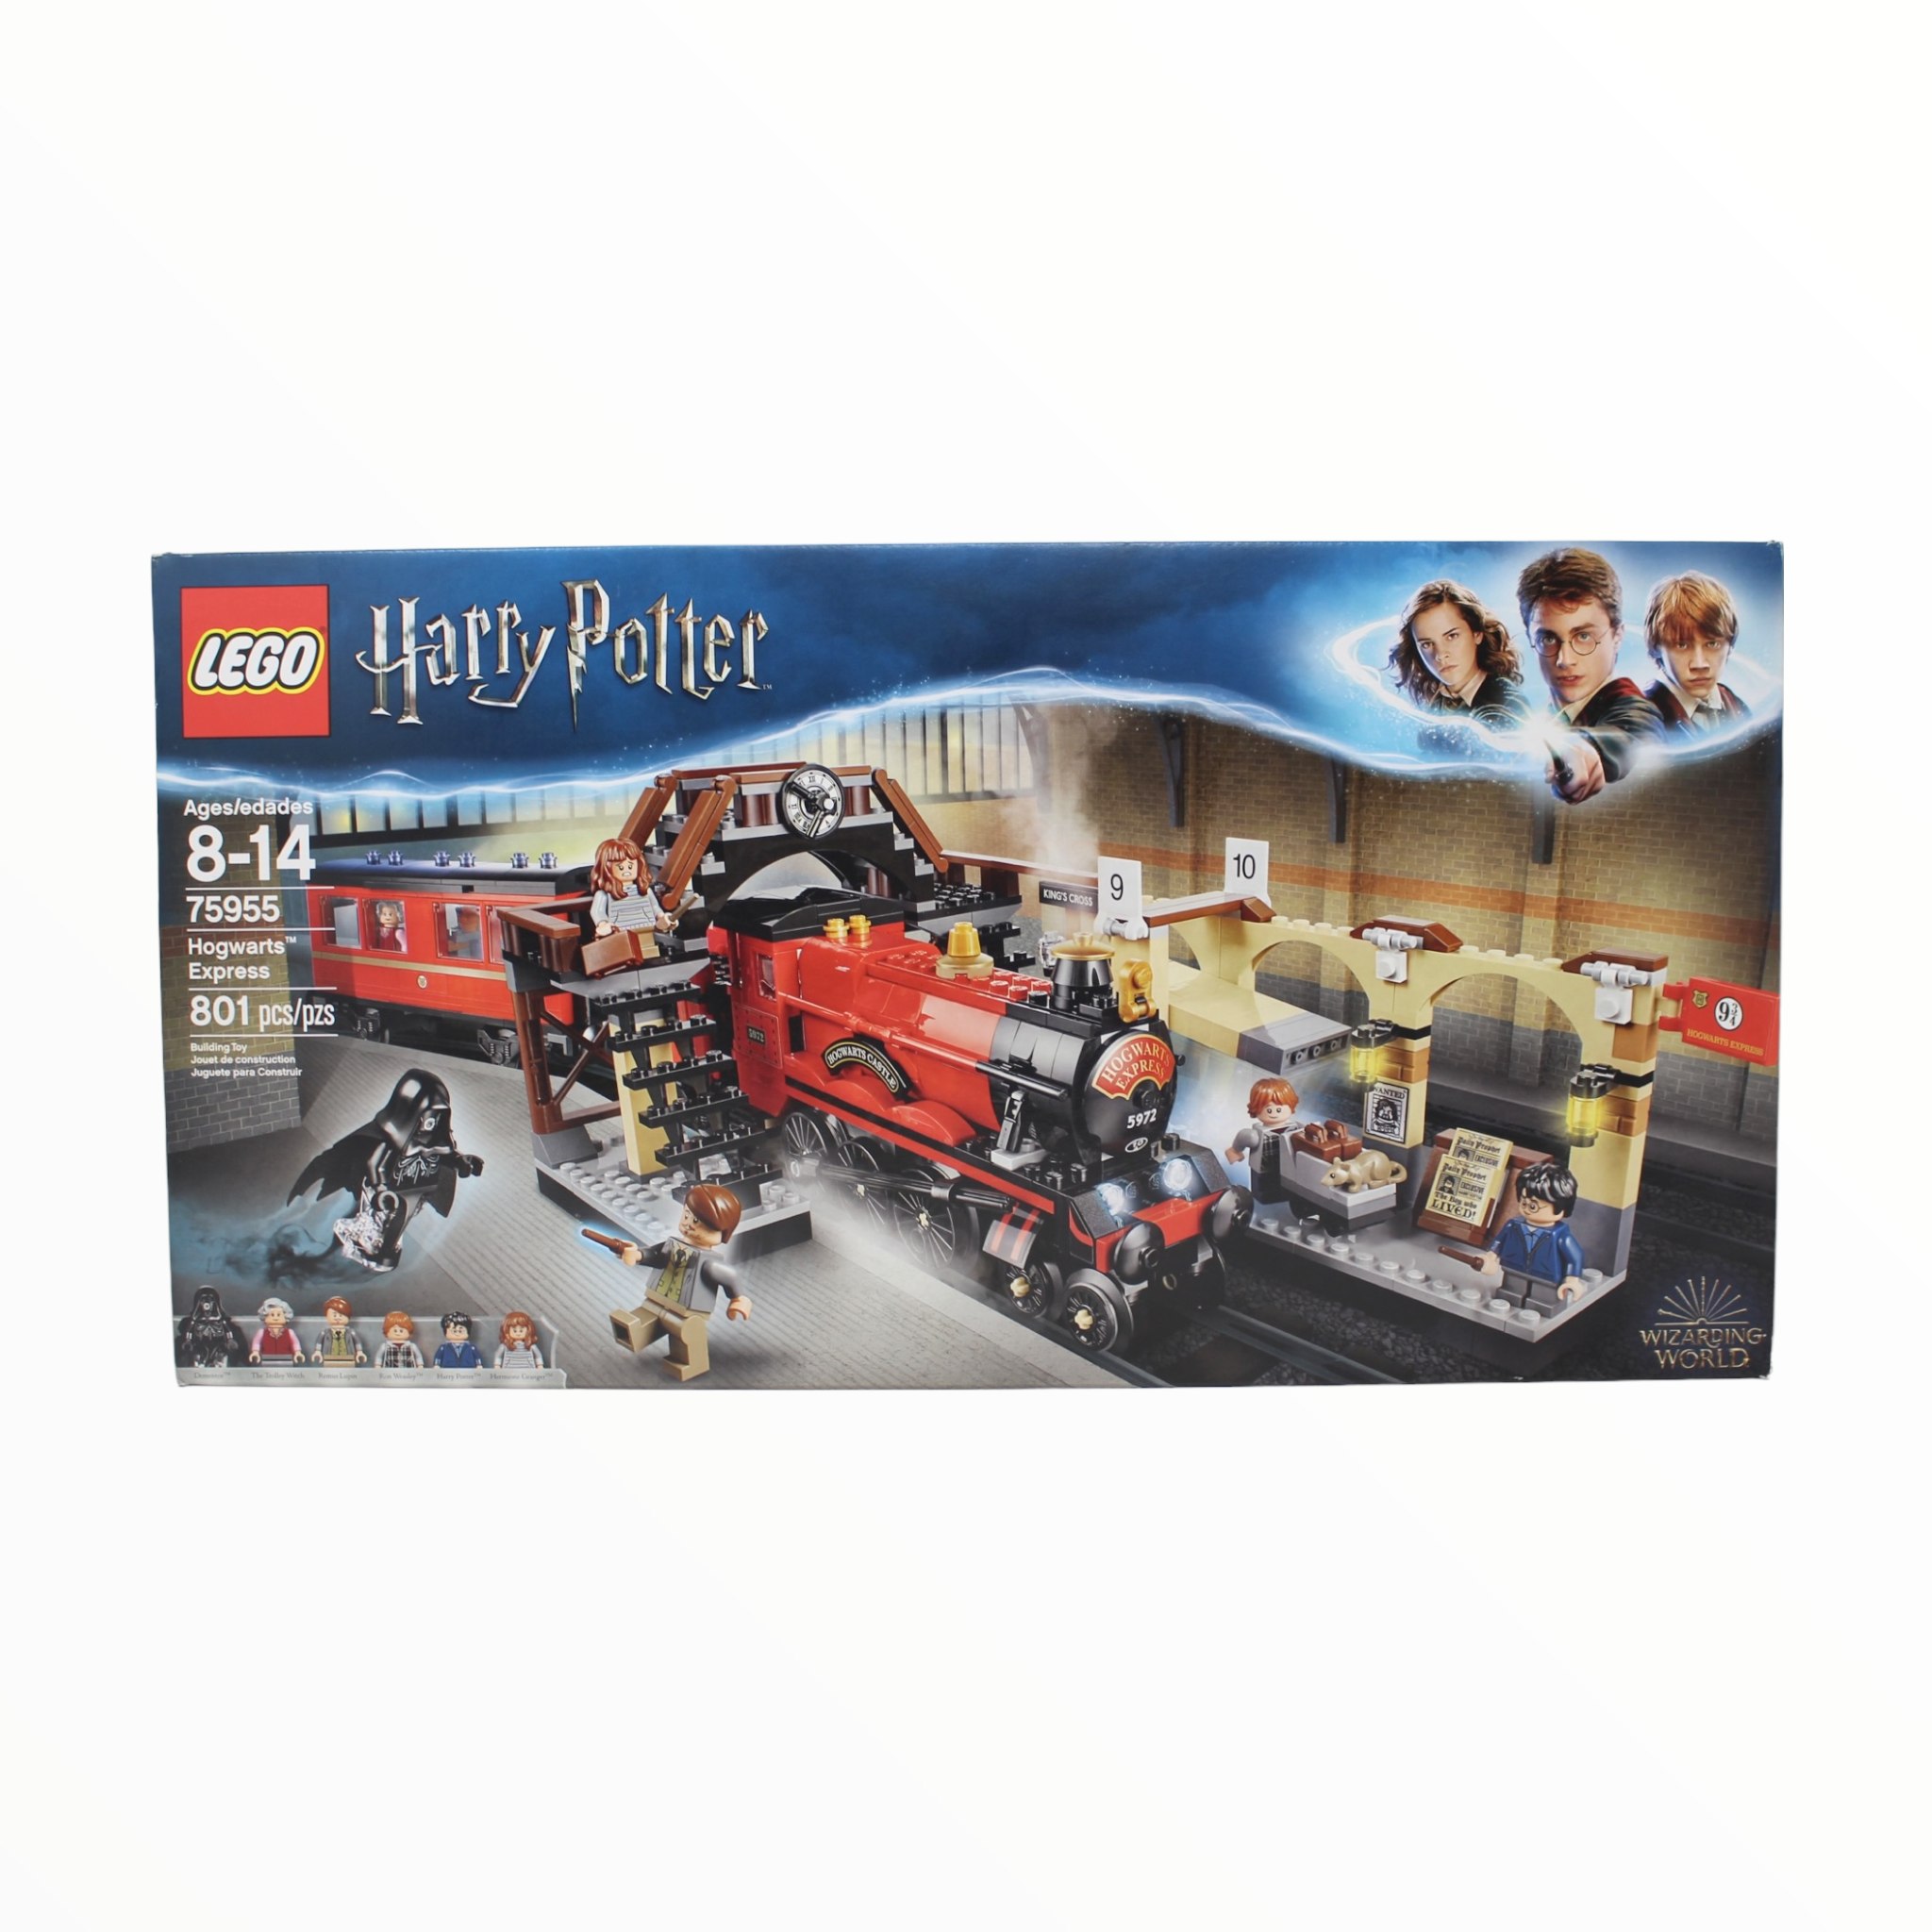 Retired Set 75955 Harry Potter Hogwarts Express